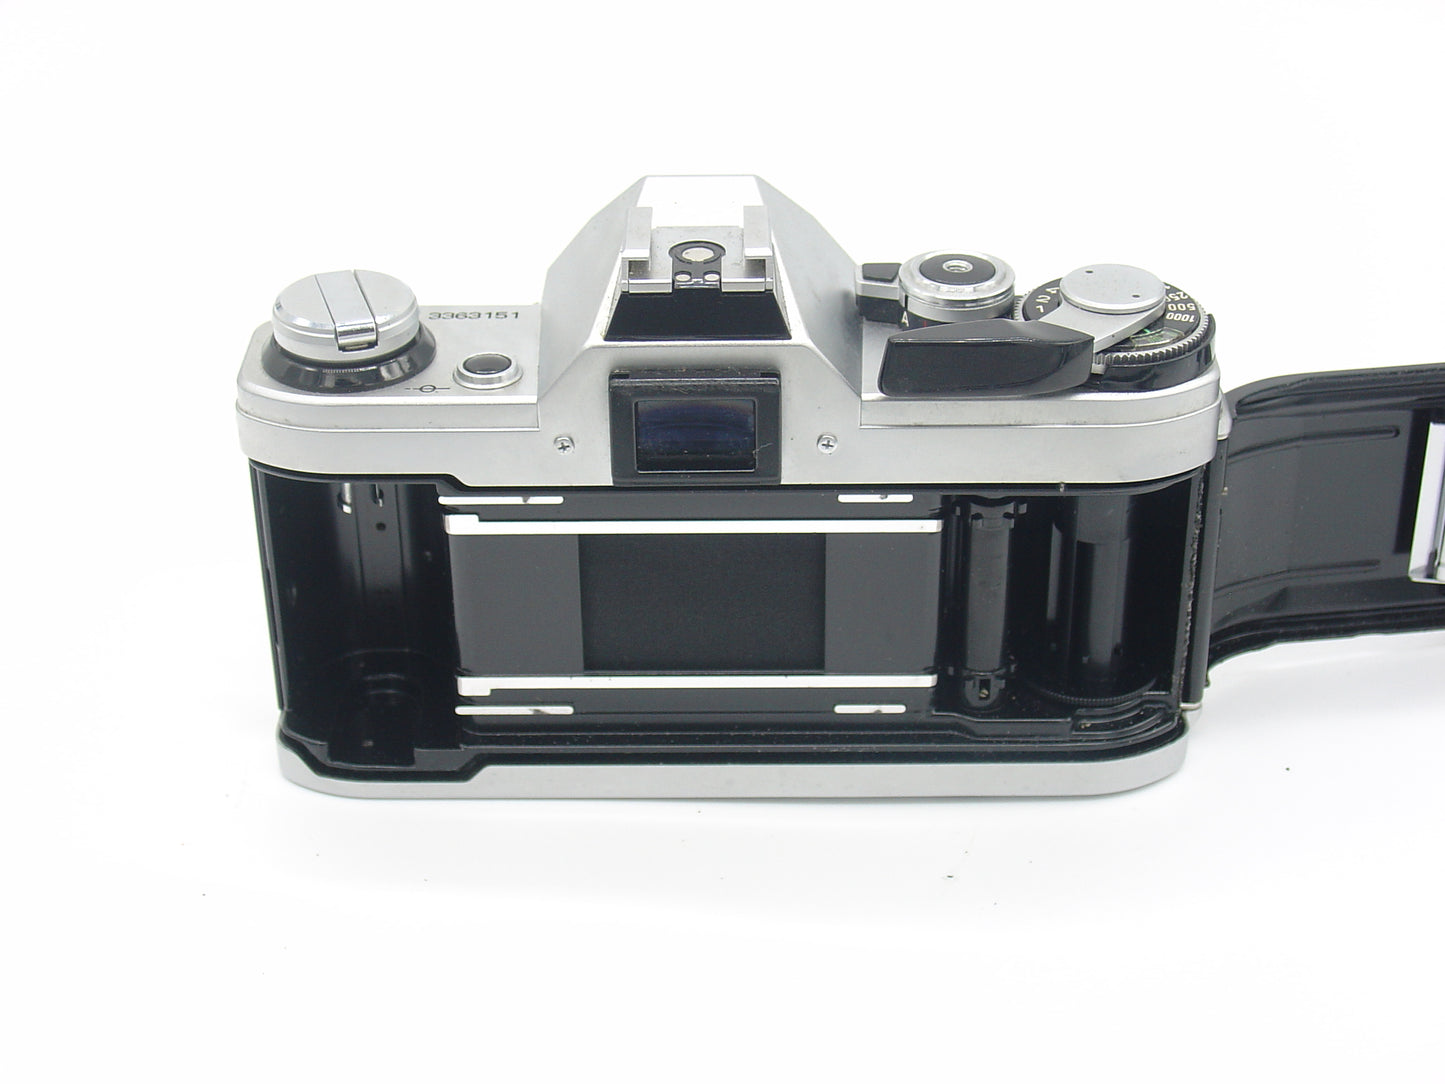 Canon AE-1 SLR camera